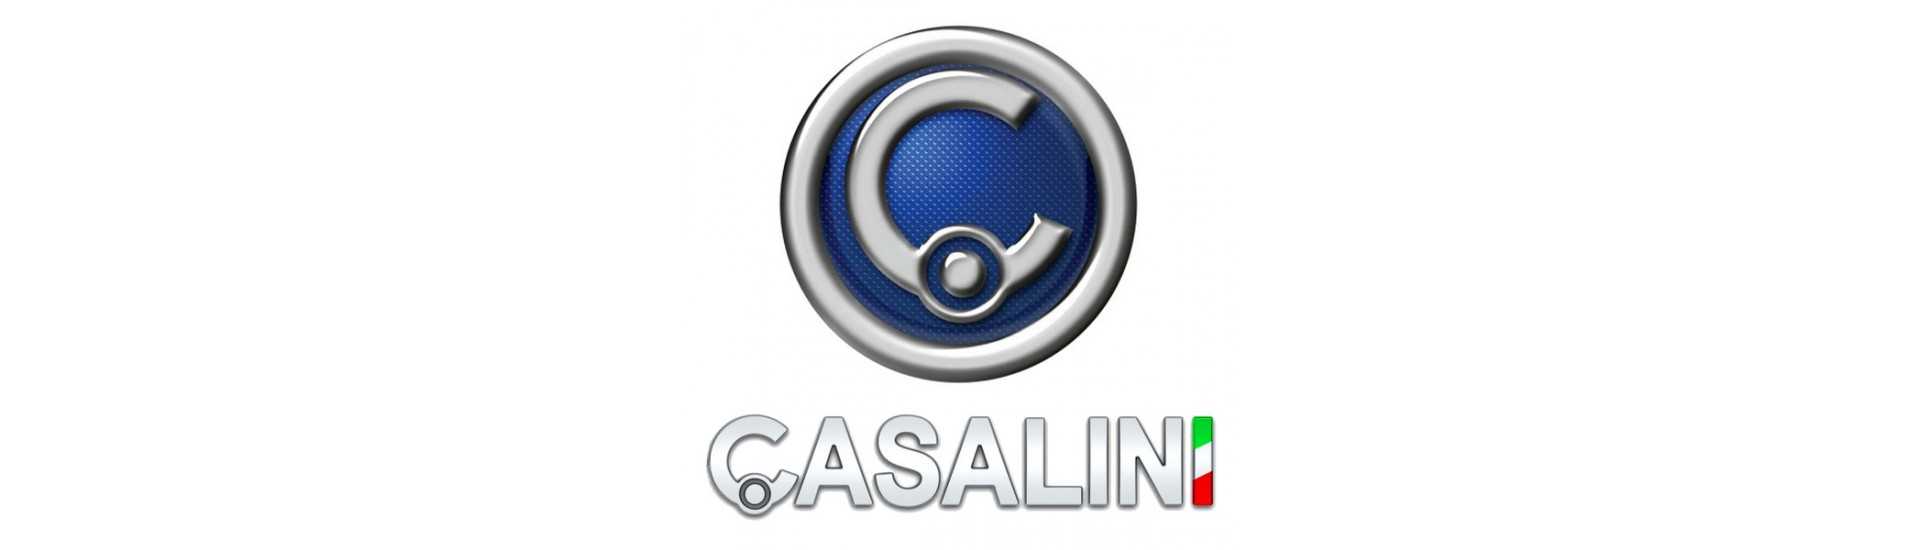 Führungskremier zum besten Preis Auto ohne Lizenz Casalini